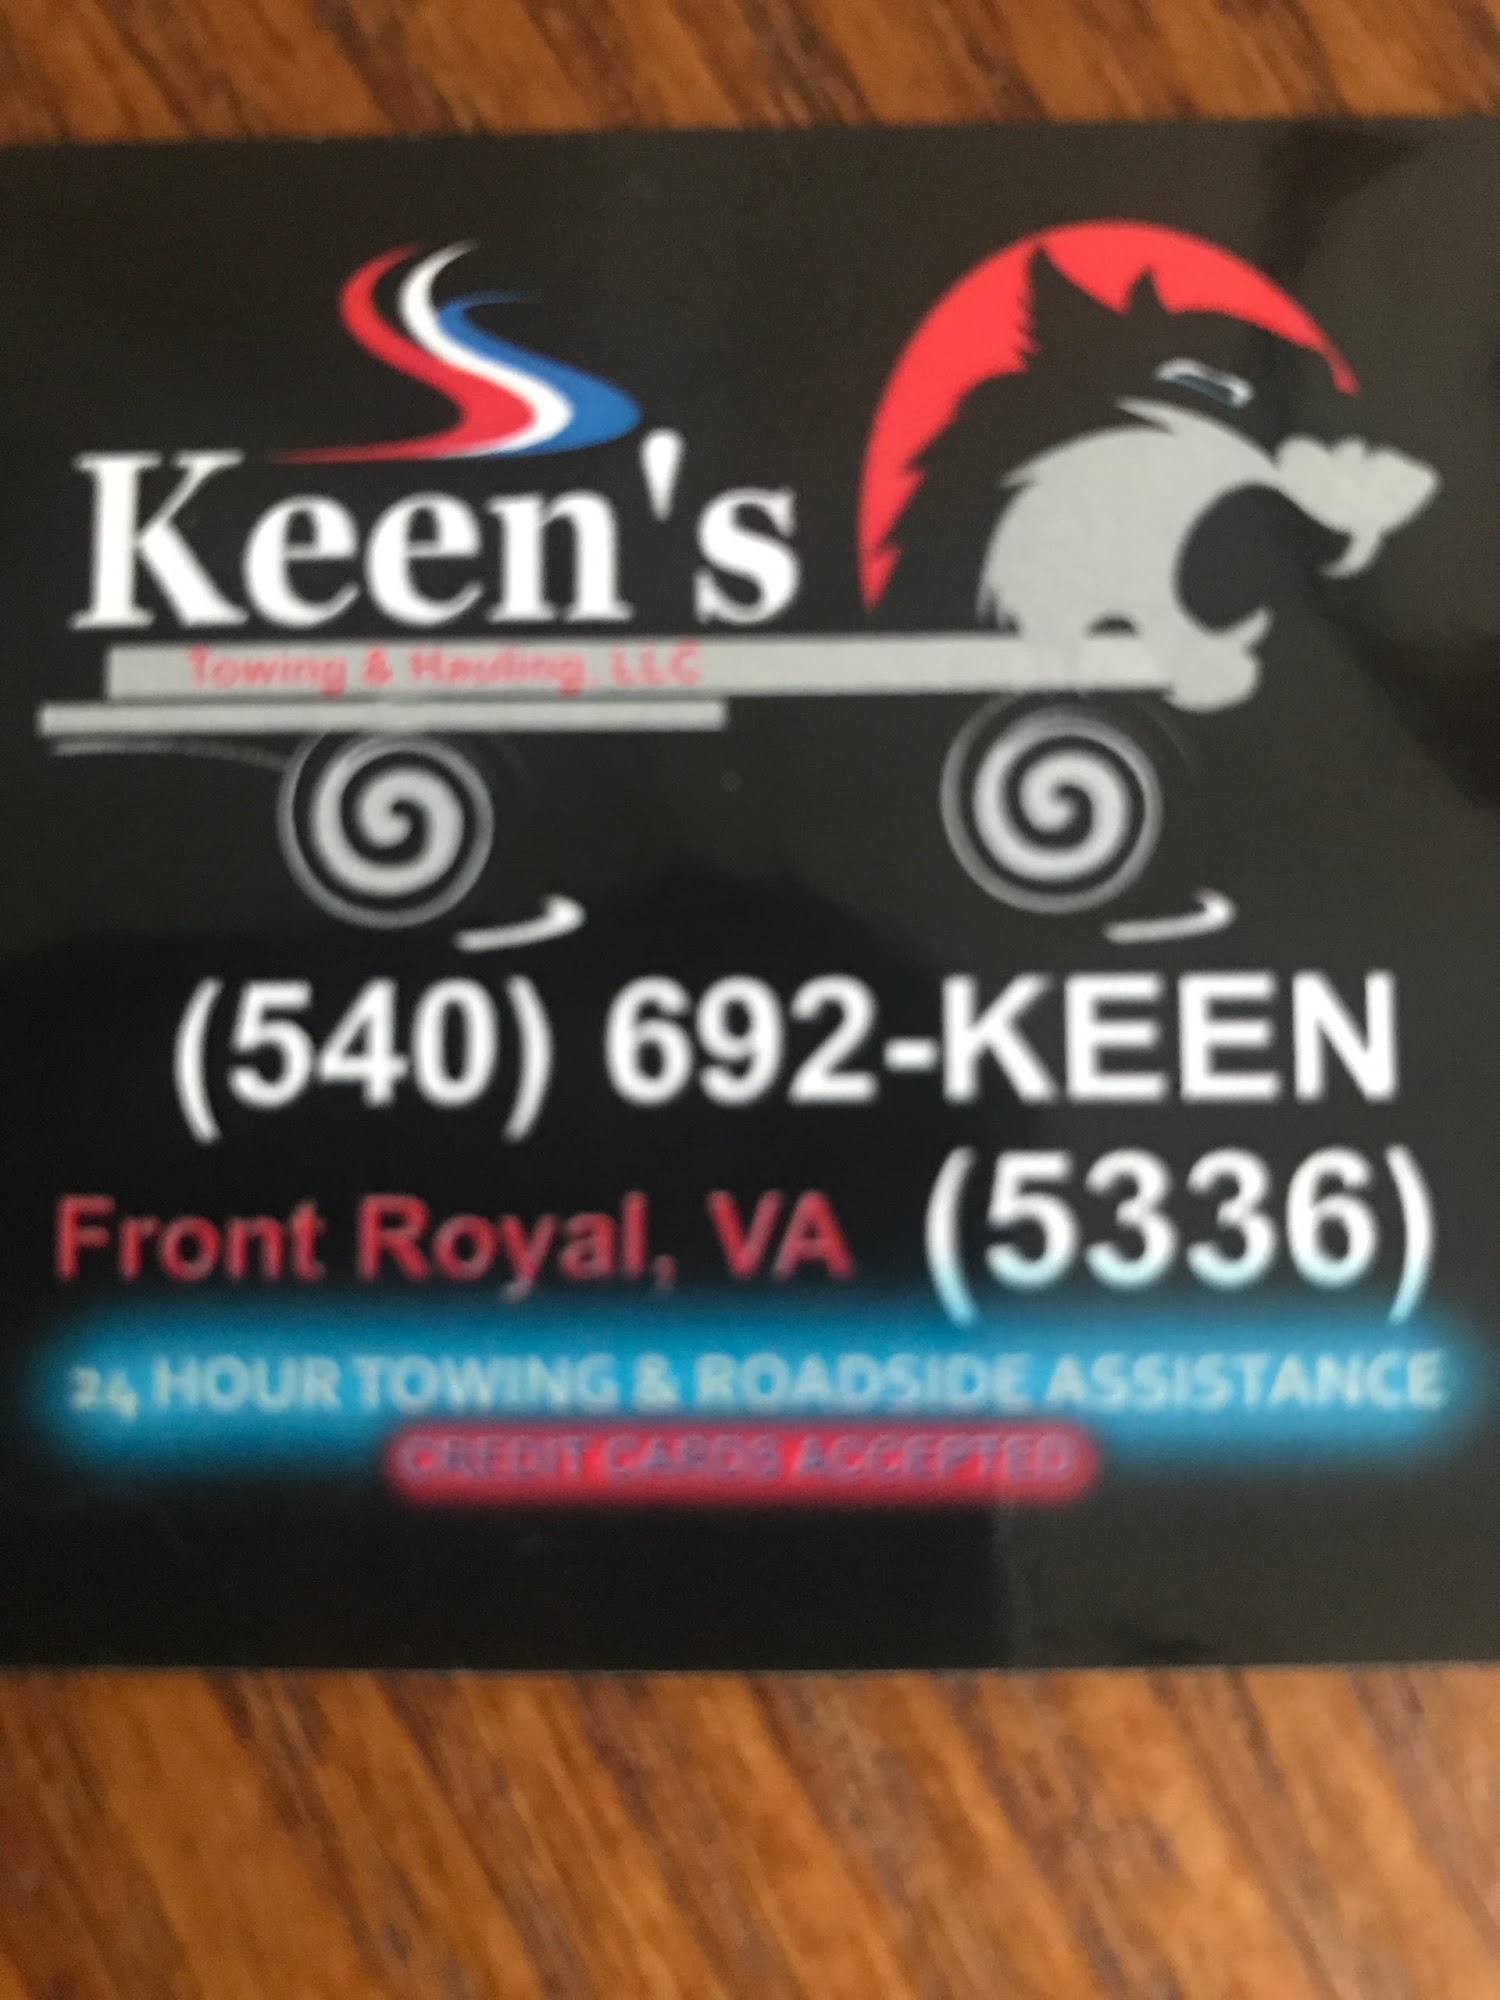 Keen's Towing & Hauling LLC ( Roadside Repair)